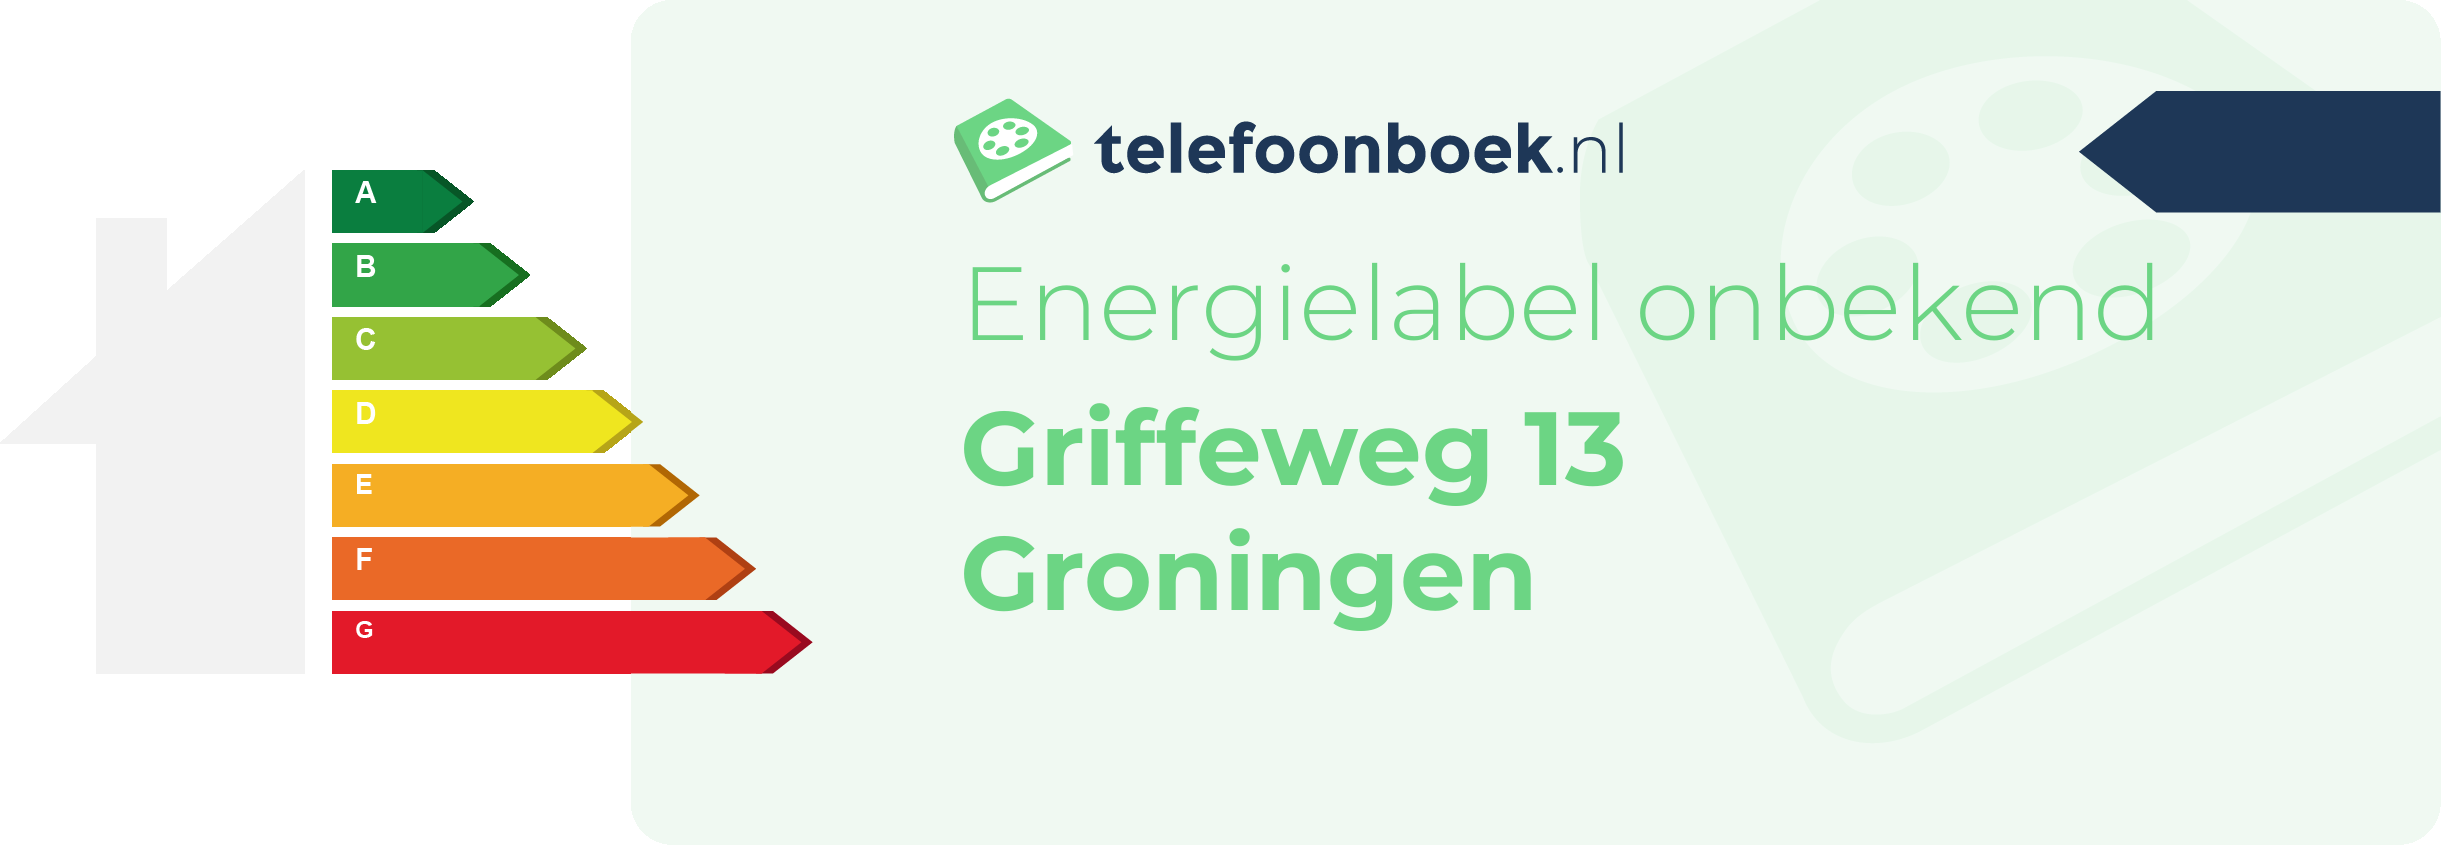 Energielabel Griffeweg 13 Groningen